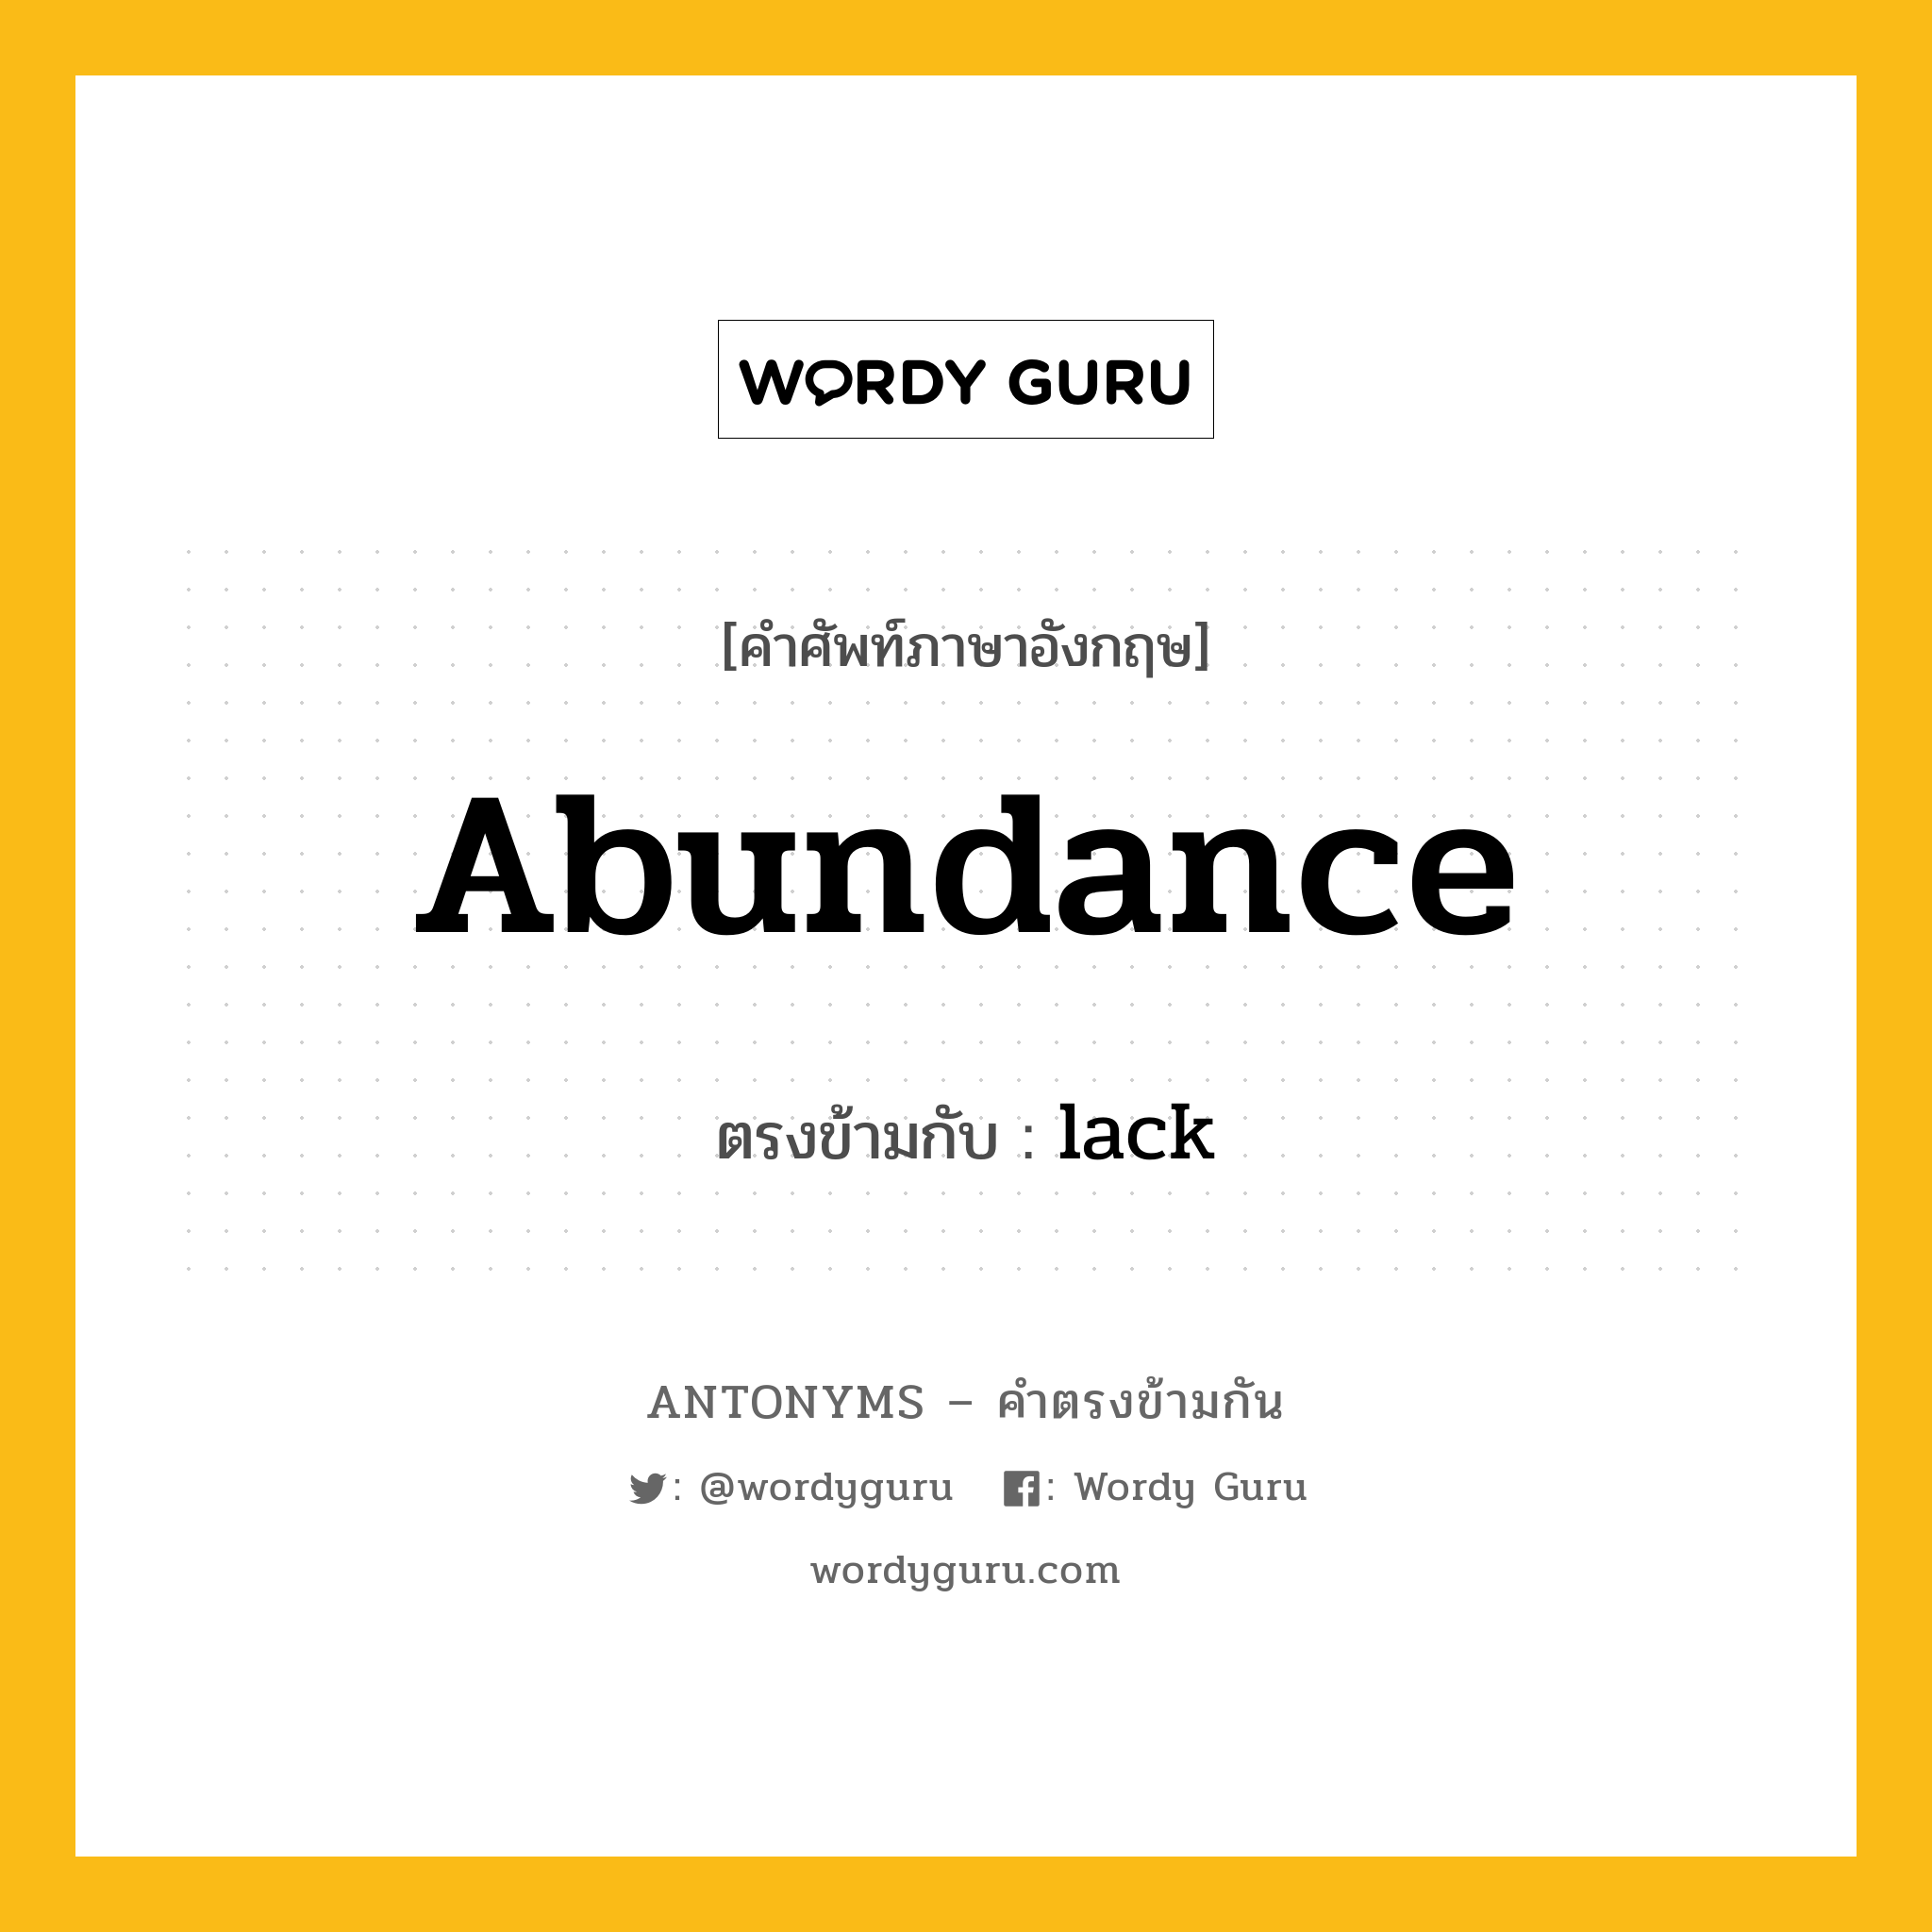 abundance เป็นคำตรงข้ามกับคำไหนบ้าง?, คำศัพท์ภาษาอังกฤษ abundance ตรงข้ามกับ lack หมวด lack